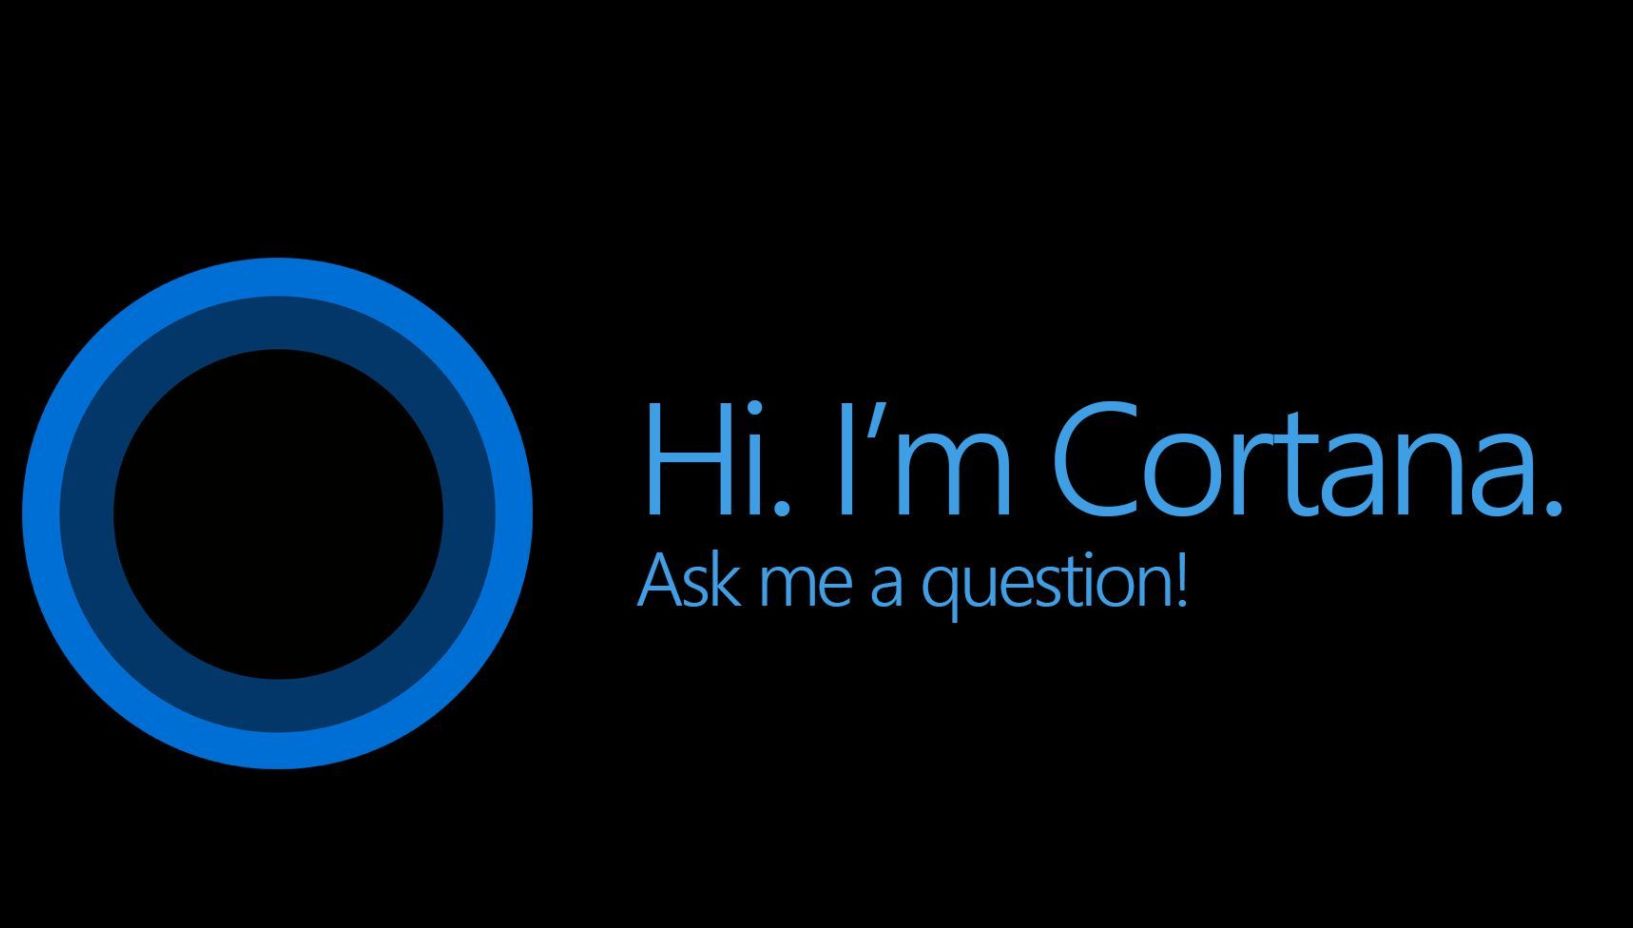 नए कोरटाना अनुभव विंडोज 10 20H1 में Cortana कौशल को प्रतिस्थापित करता है क्योंकि Microsoft सहायक वर्चुअल सहायक की उपलब्धता को बढ़ाता है